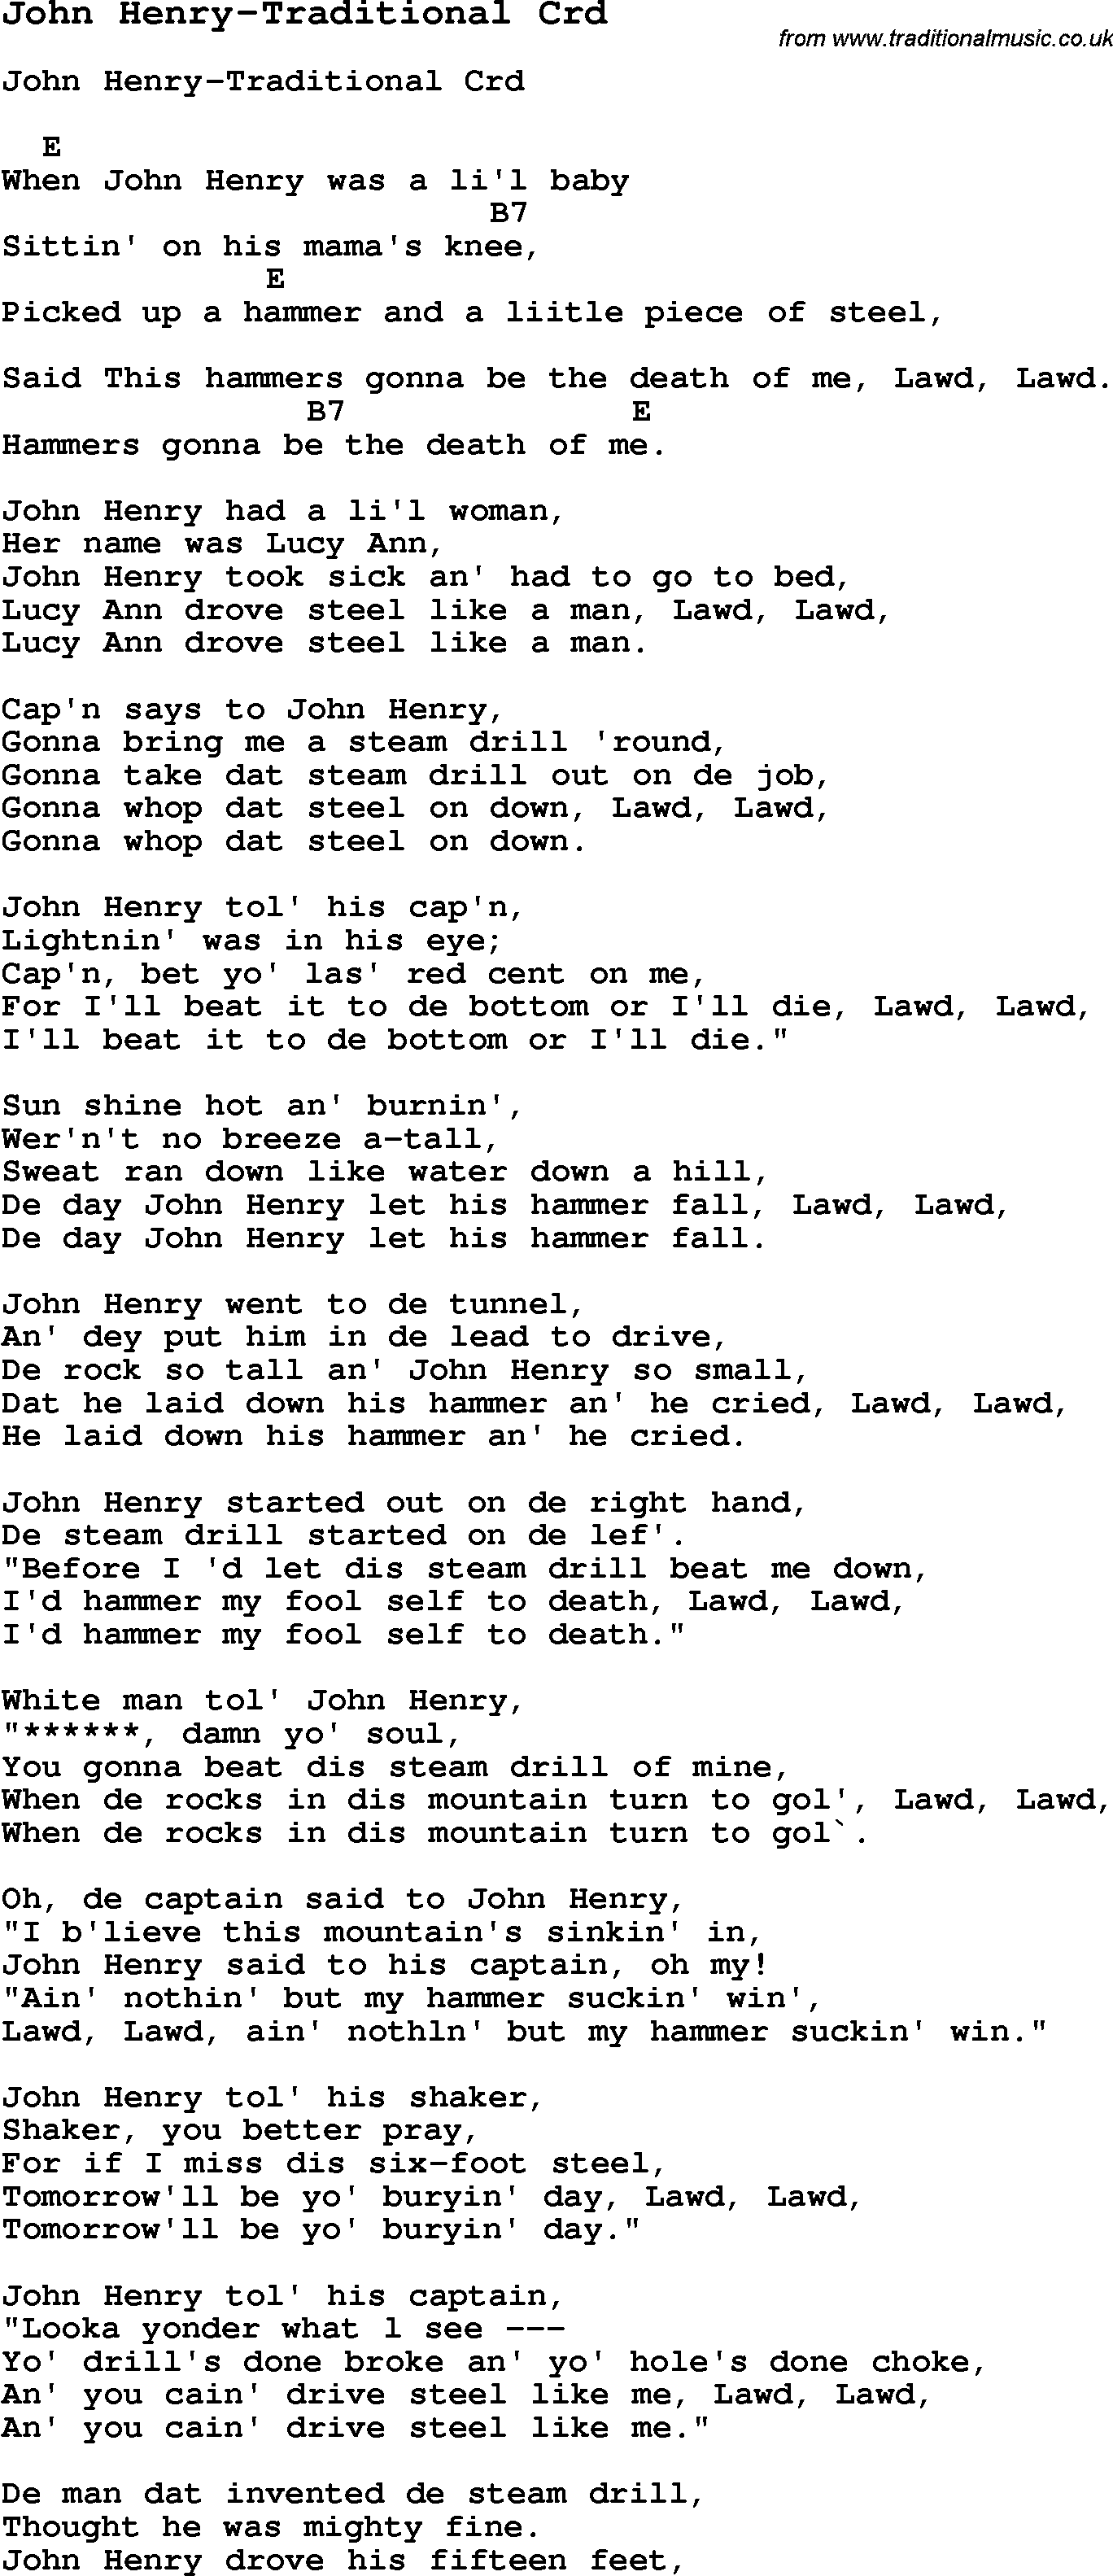 Skiffle Song Lyrics for John Henry-Traditional with chords for Mandolin, Ukulele, Guitar, Banjo etc.